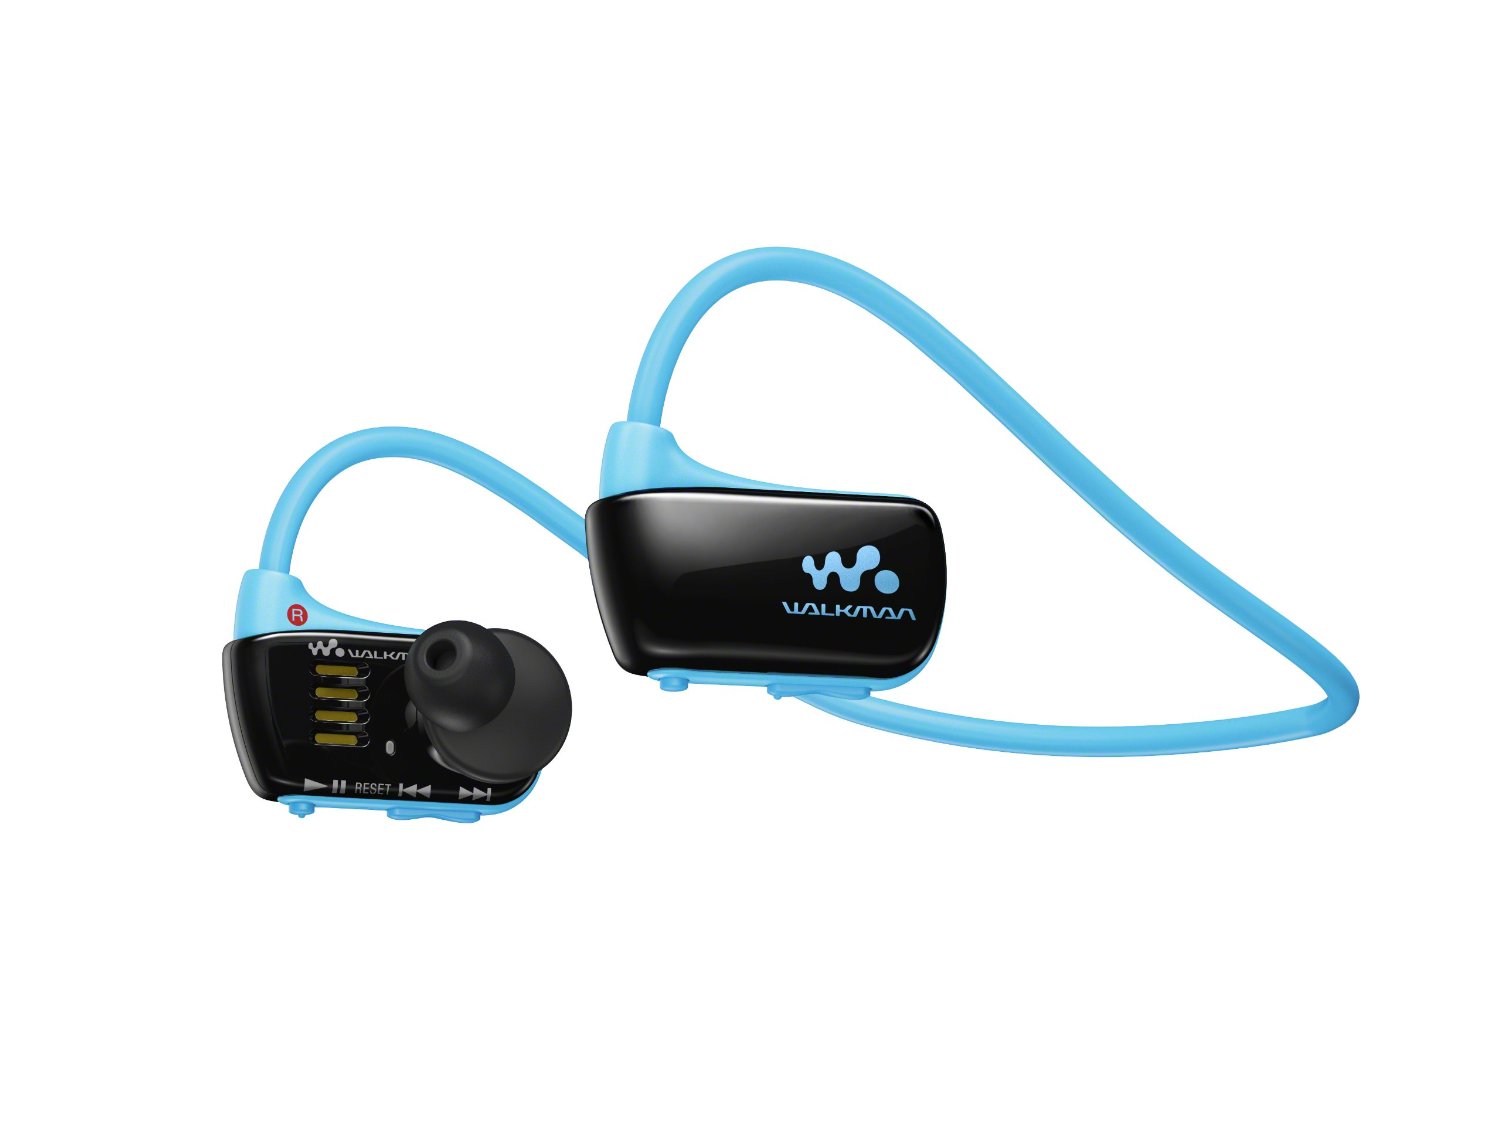 Sony Walkman NWZW273S 4 GB wasserdicht Sport MP3-Player (blau) m